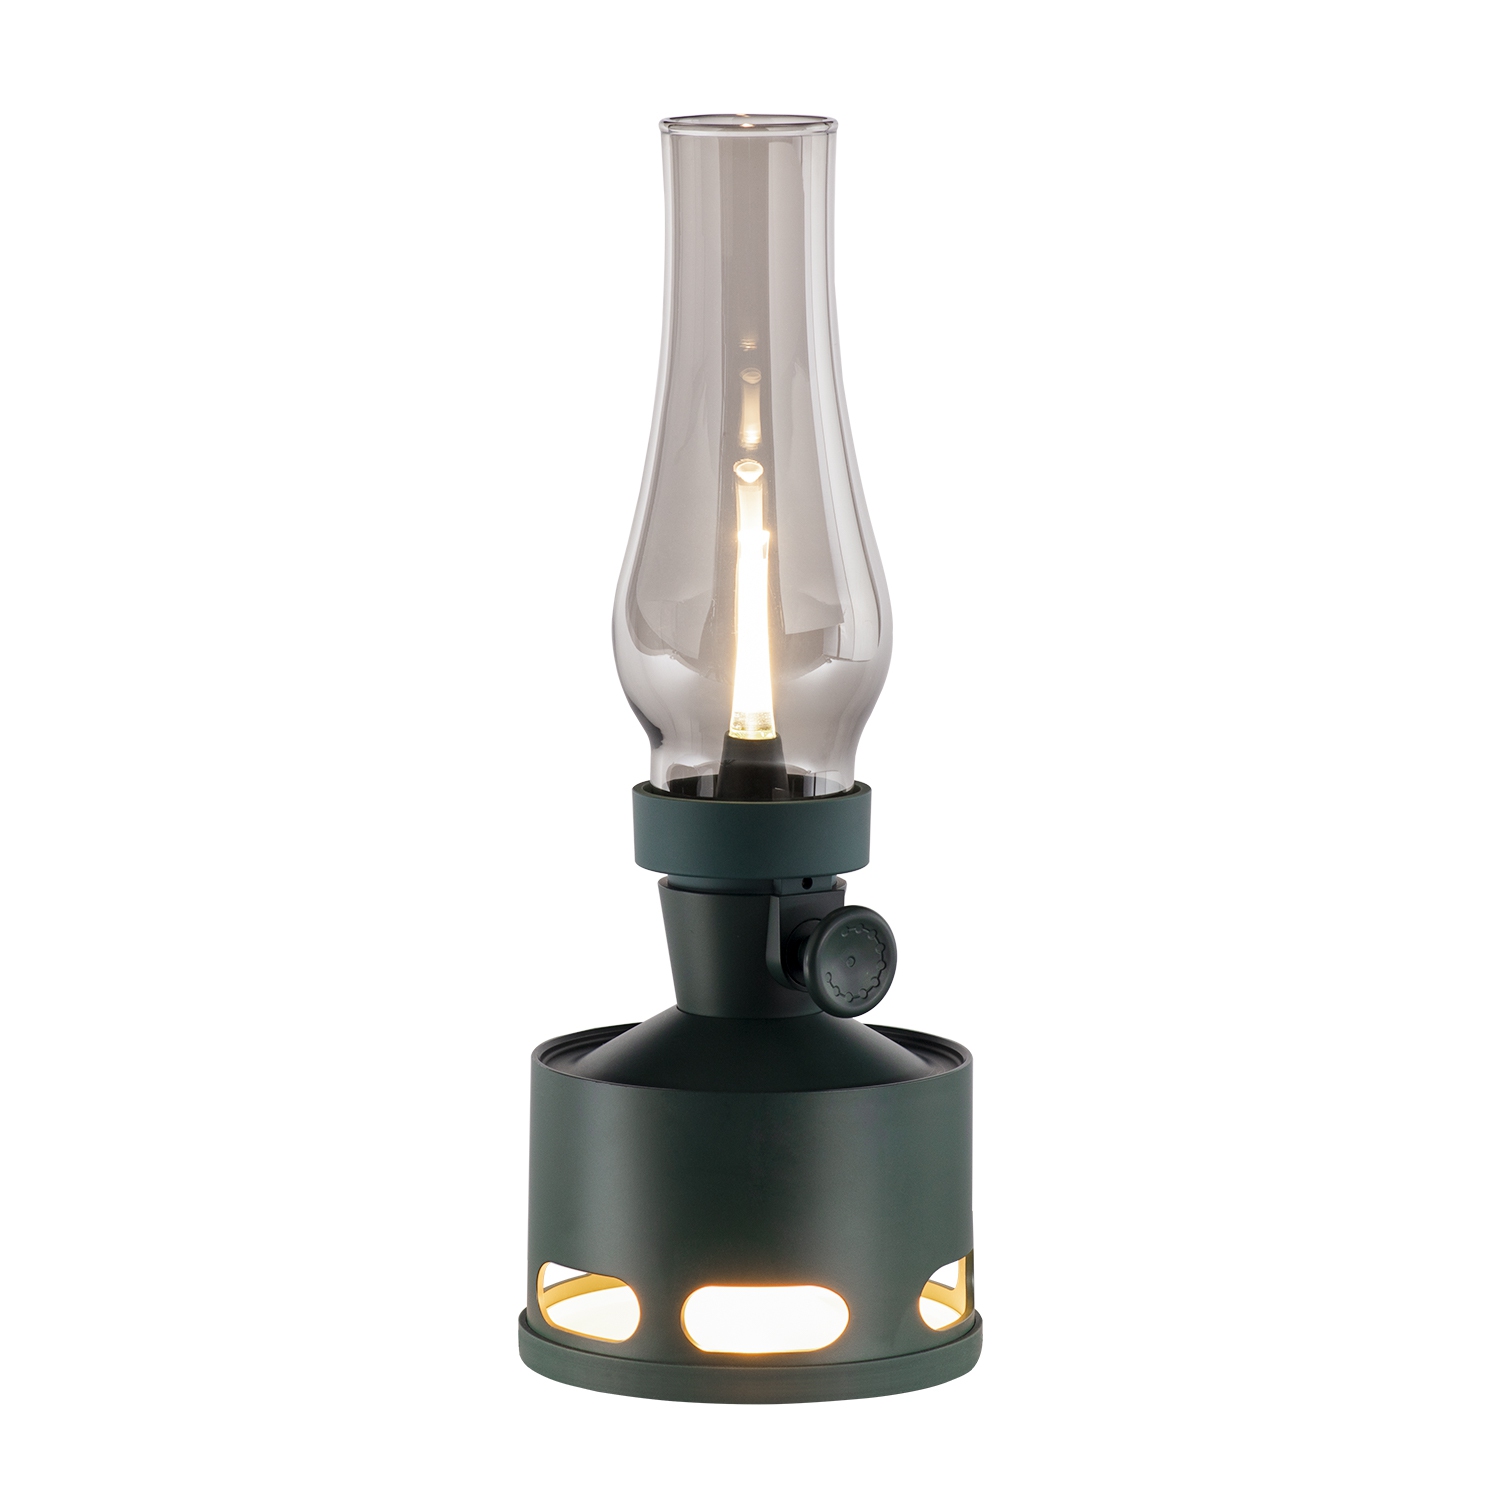 Tubicen Rechargeable LED Oil Lantern, 4000mAh Battery Operated Flameless LED Kerosene Lamp, Cordless Desk Lantern Kerosene Light, Blow/Tilt Off Control, 10-Way Dimmable Table Lamp, Green